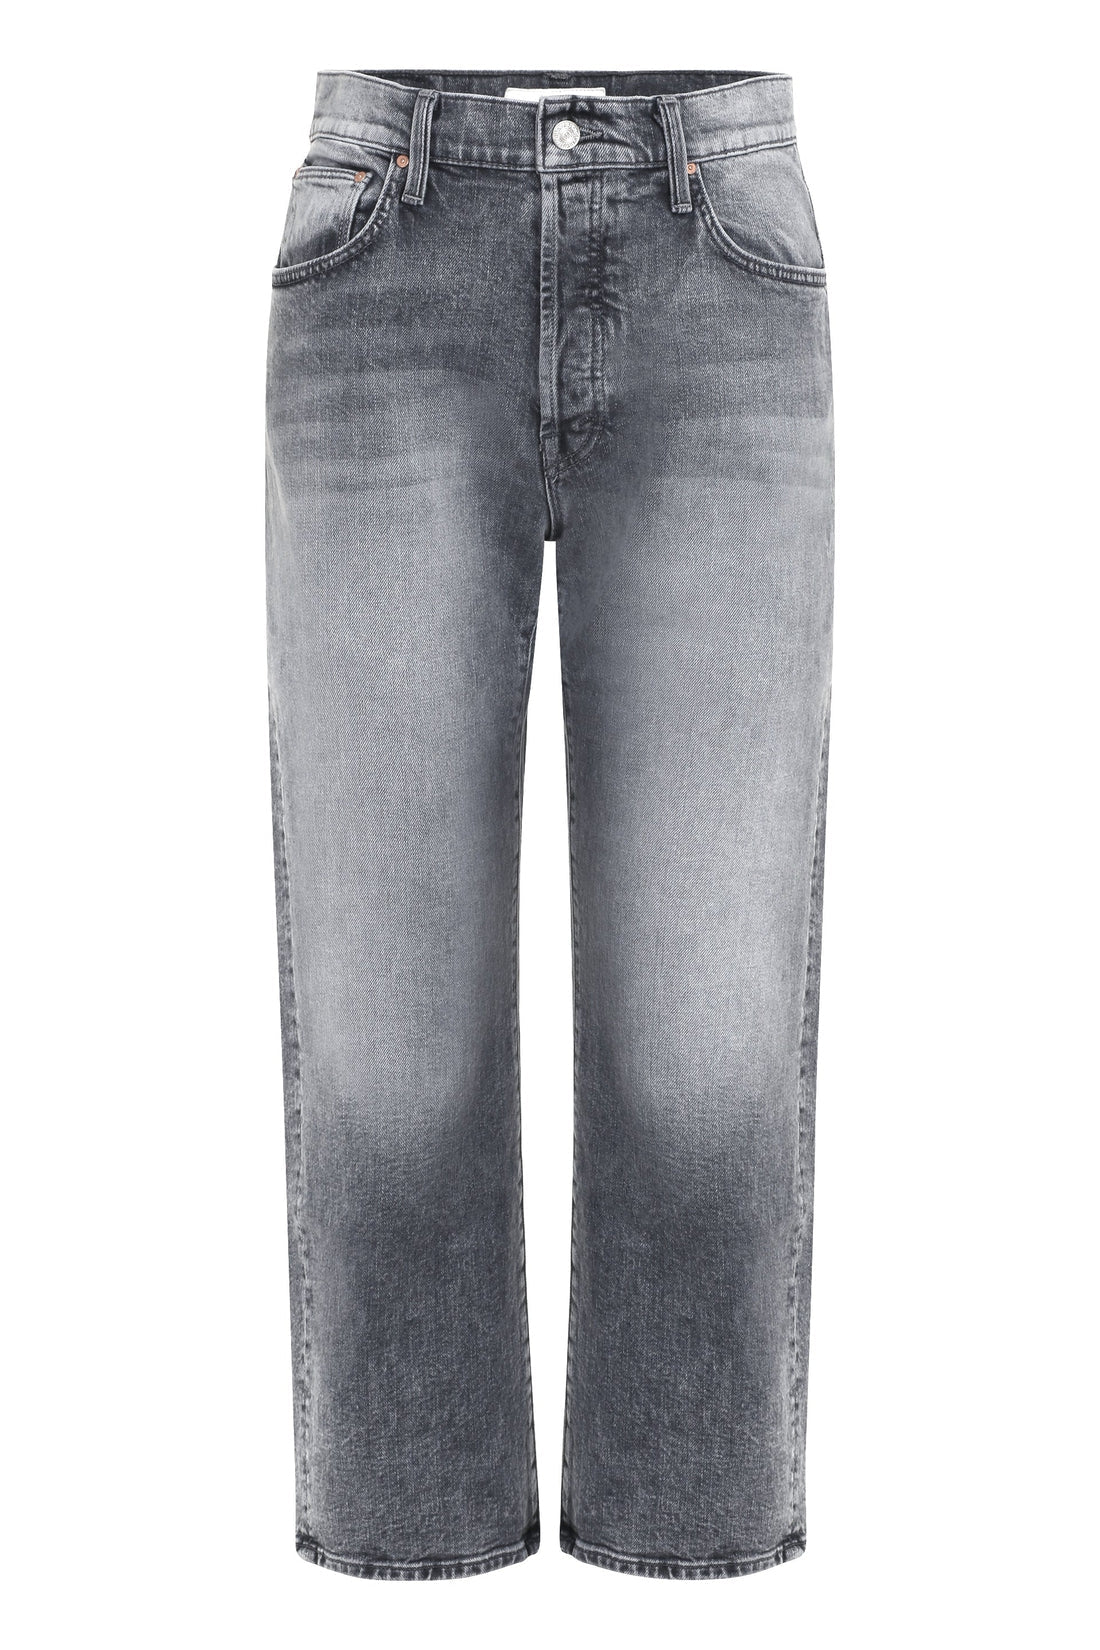 Mother-OUTLET-SALE-The Ditcher Crop comfort jeans-ARCHIVIST